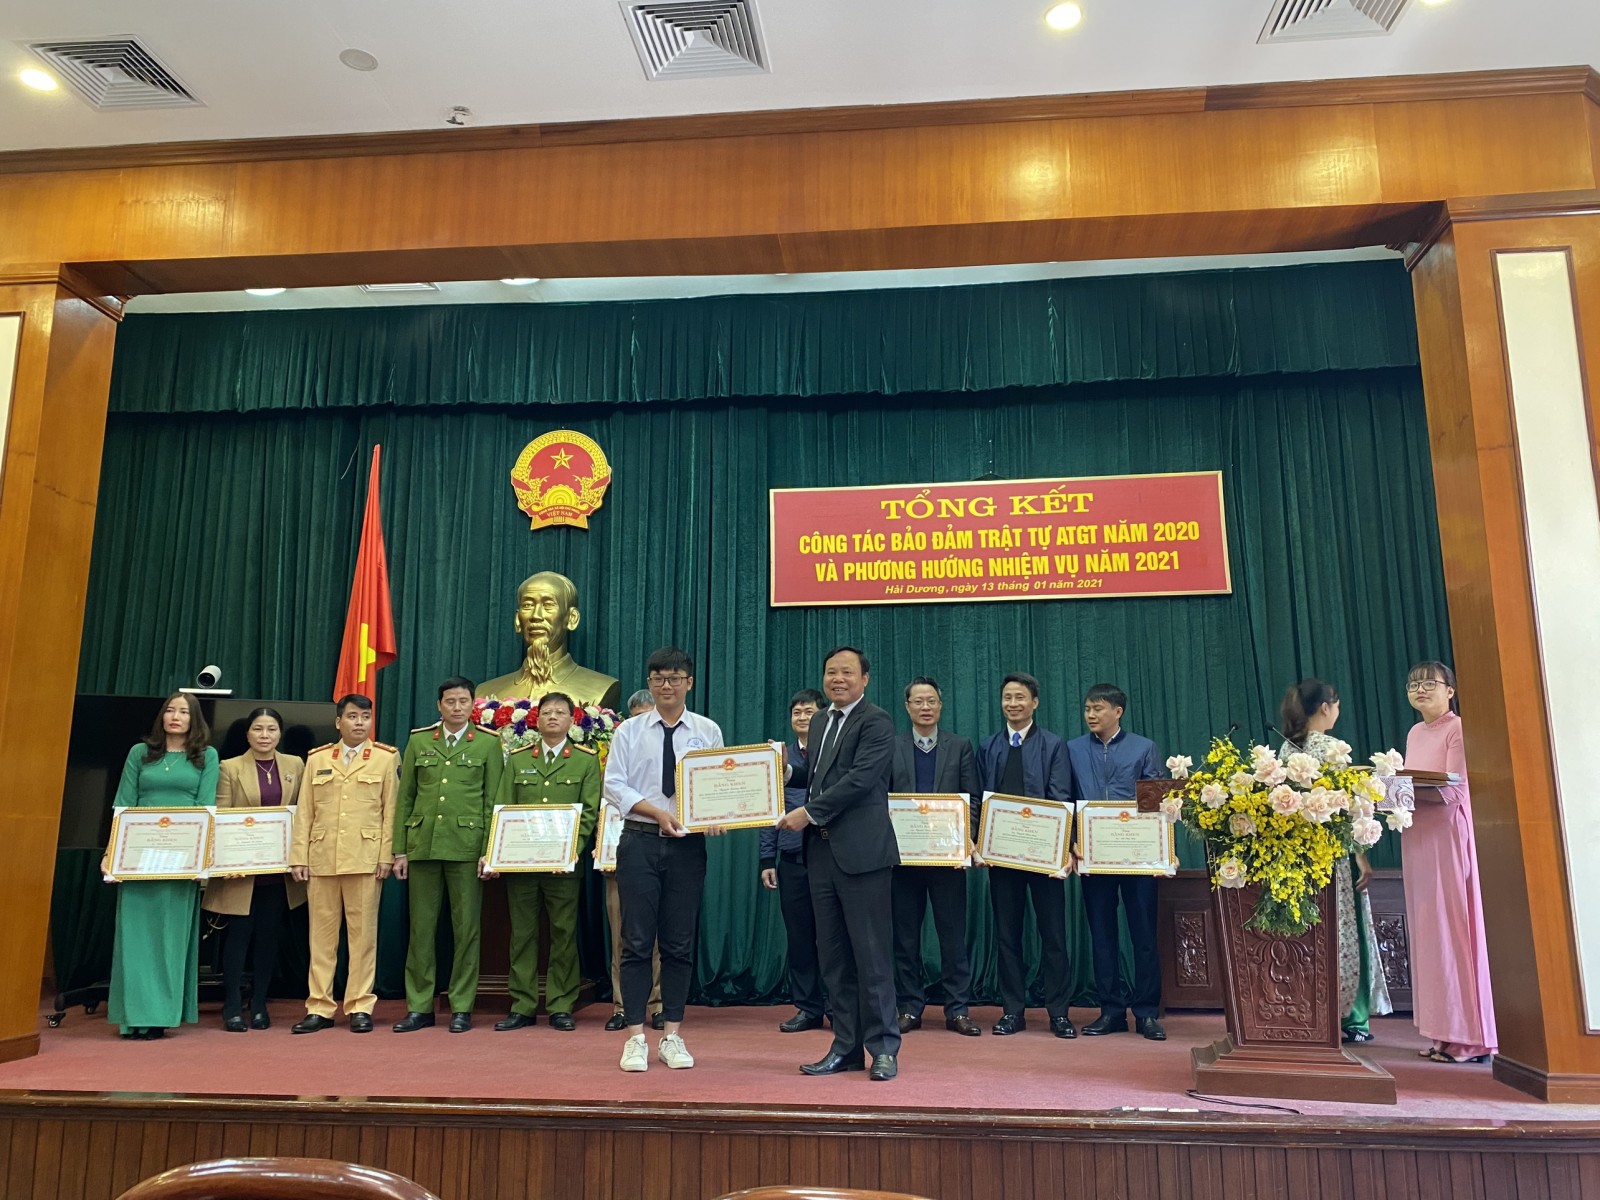 Em Phạm Trường Minh trường THPT chuyên Nguyễn Trãi vinh dự được chủ tịch UBND tỉnh Hải Dương tặng bằng khen